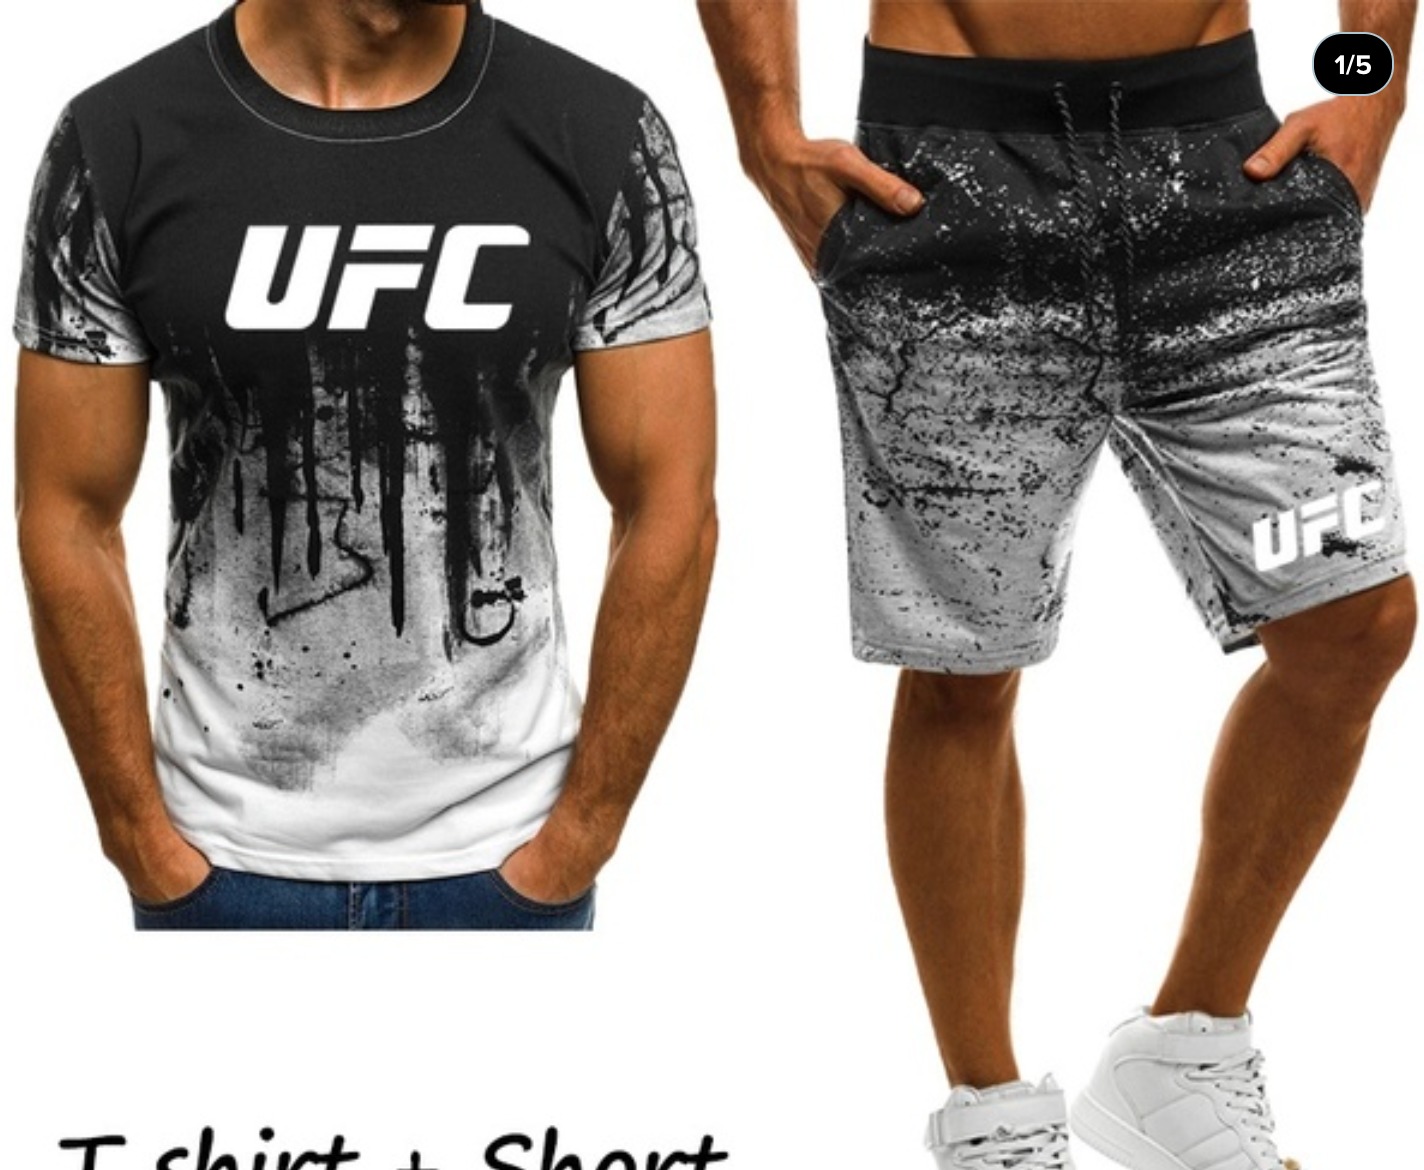 UFC Tshirt